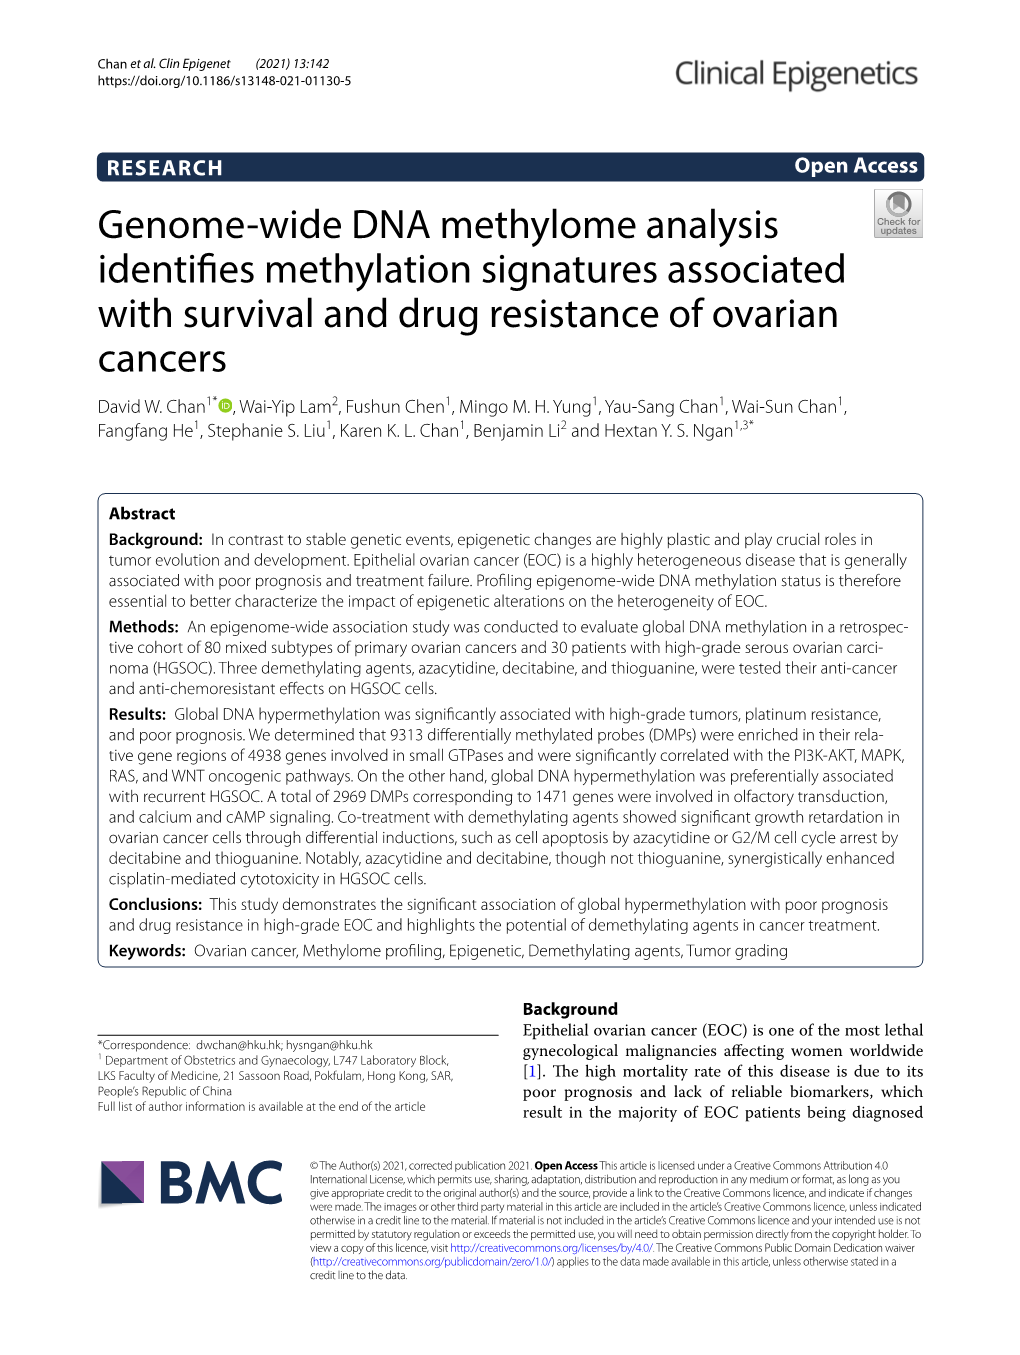 Genome-Wide DNA Methylome Analysis Identifies Methylation